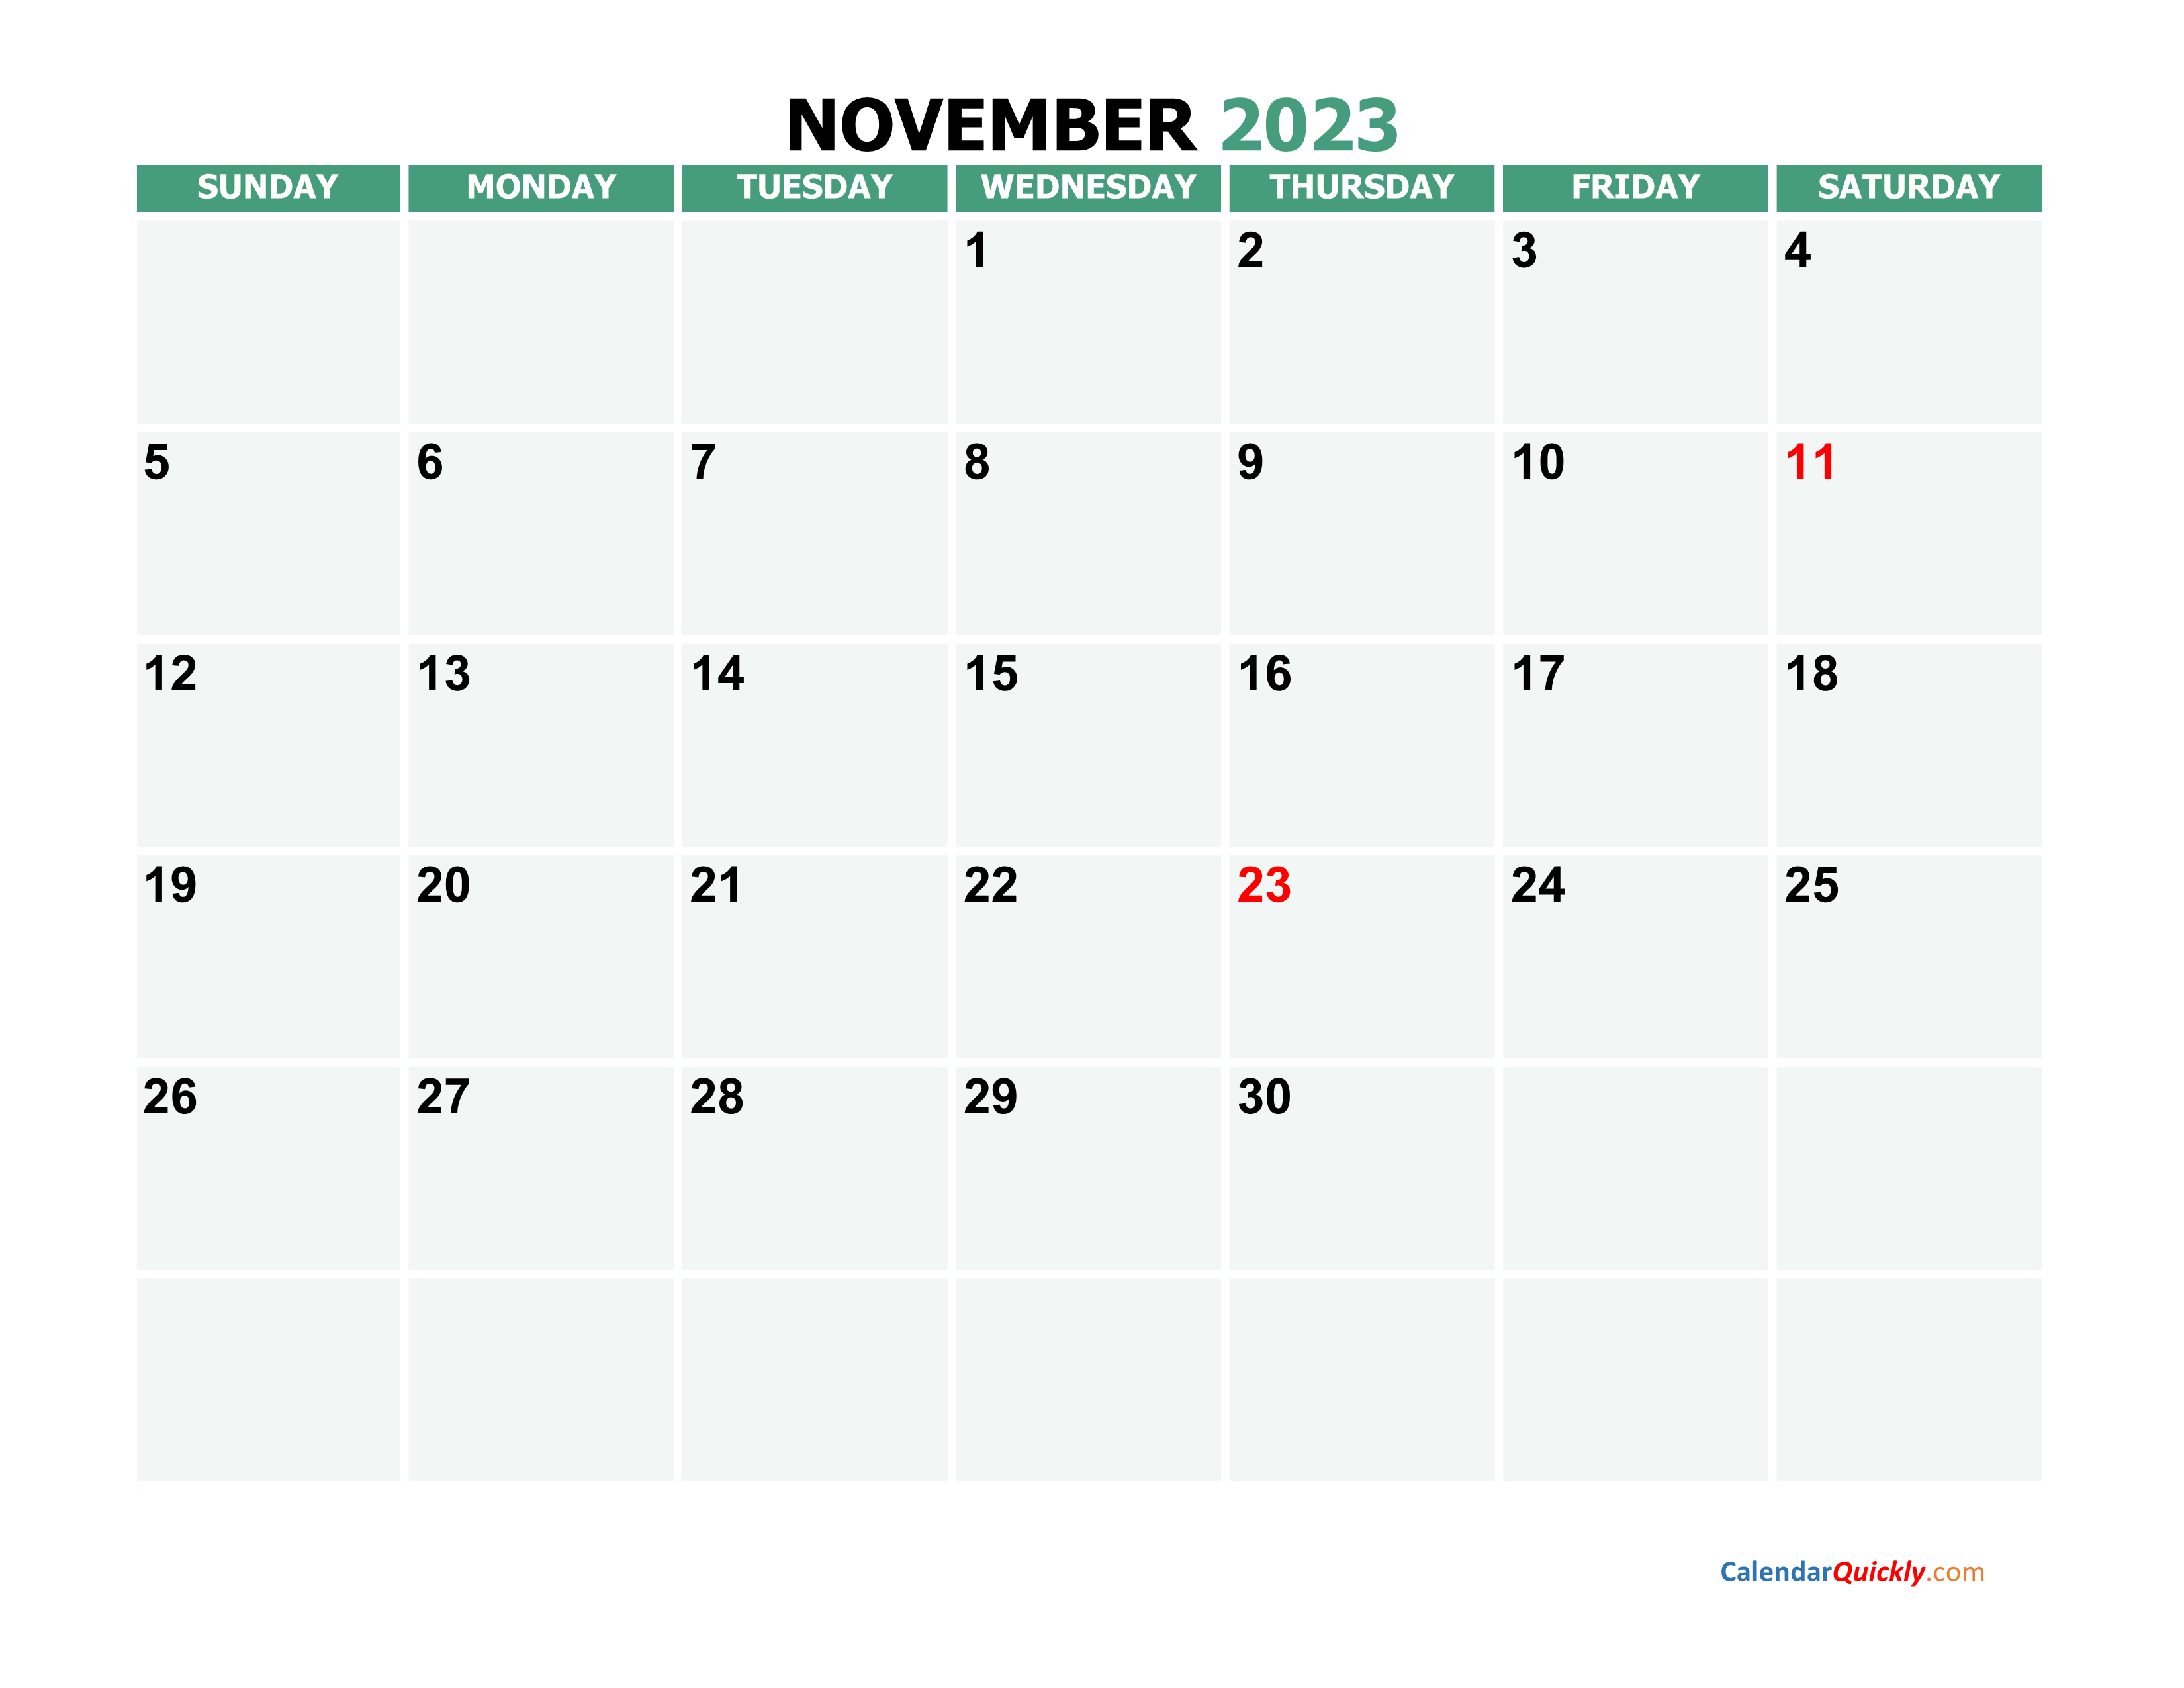 November 2023 Printable Calendar Calendar Quickly